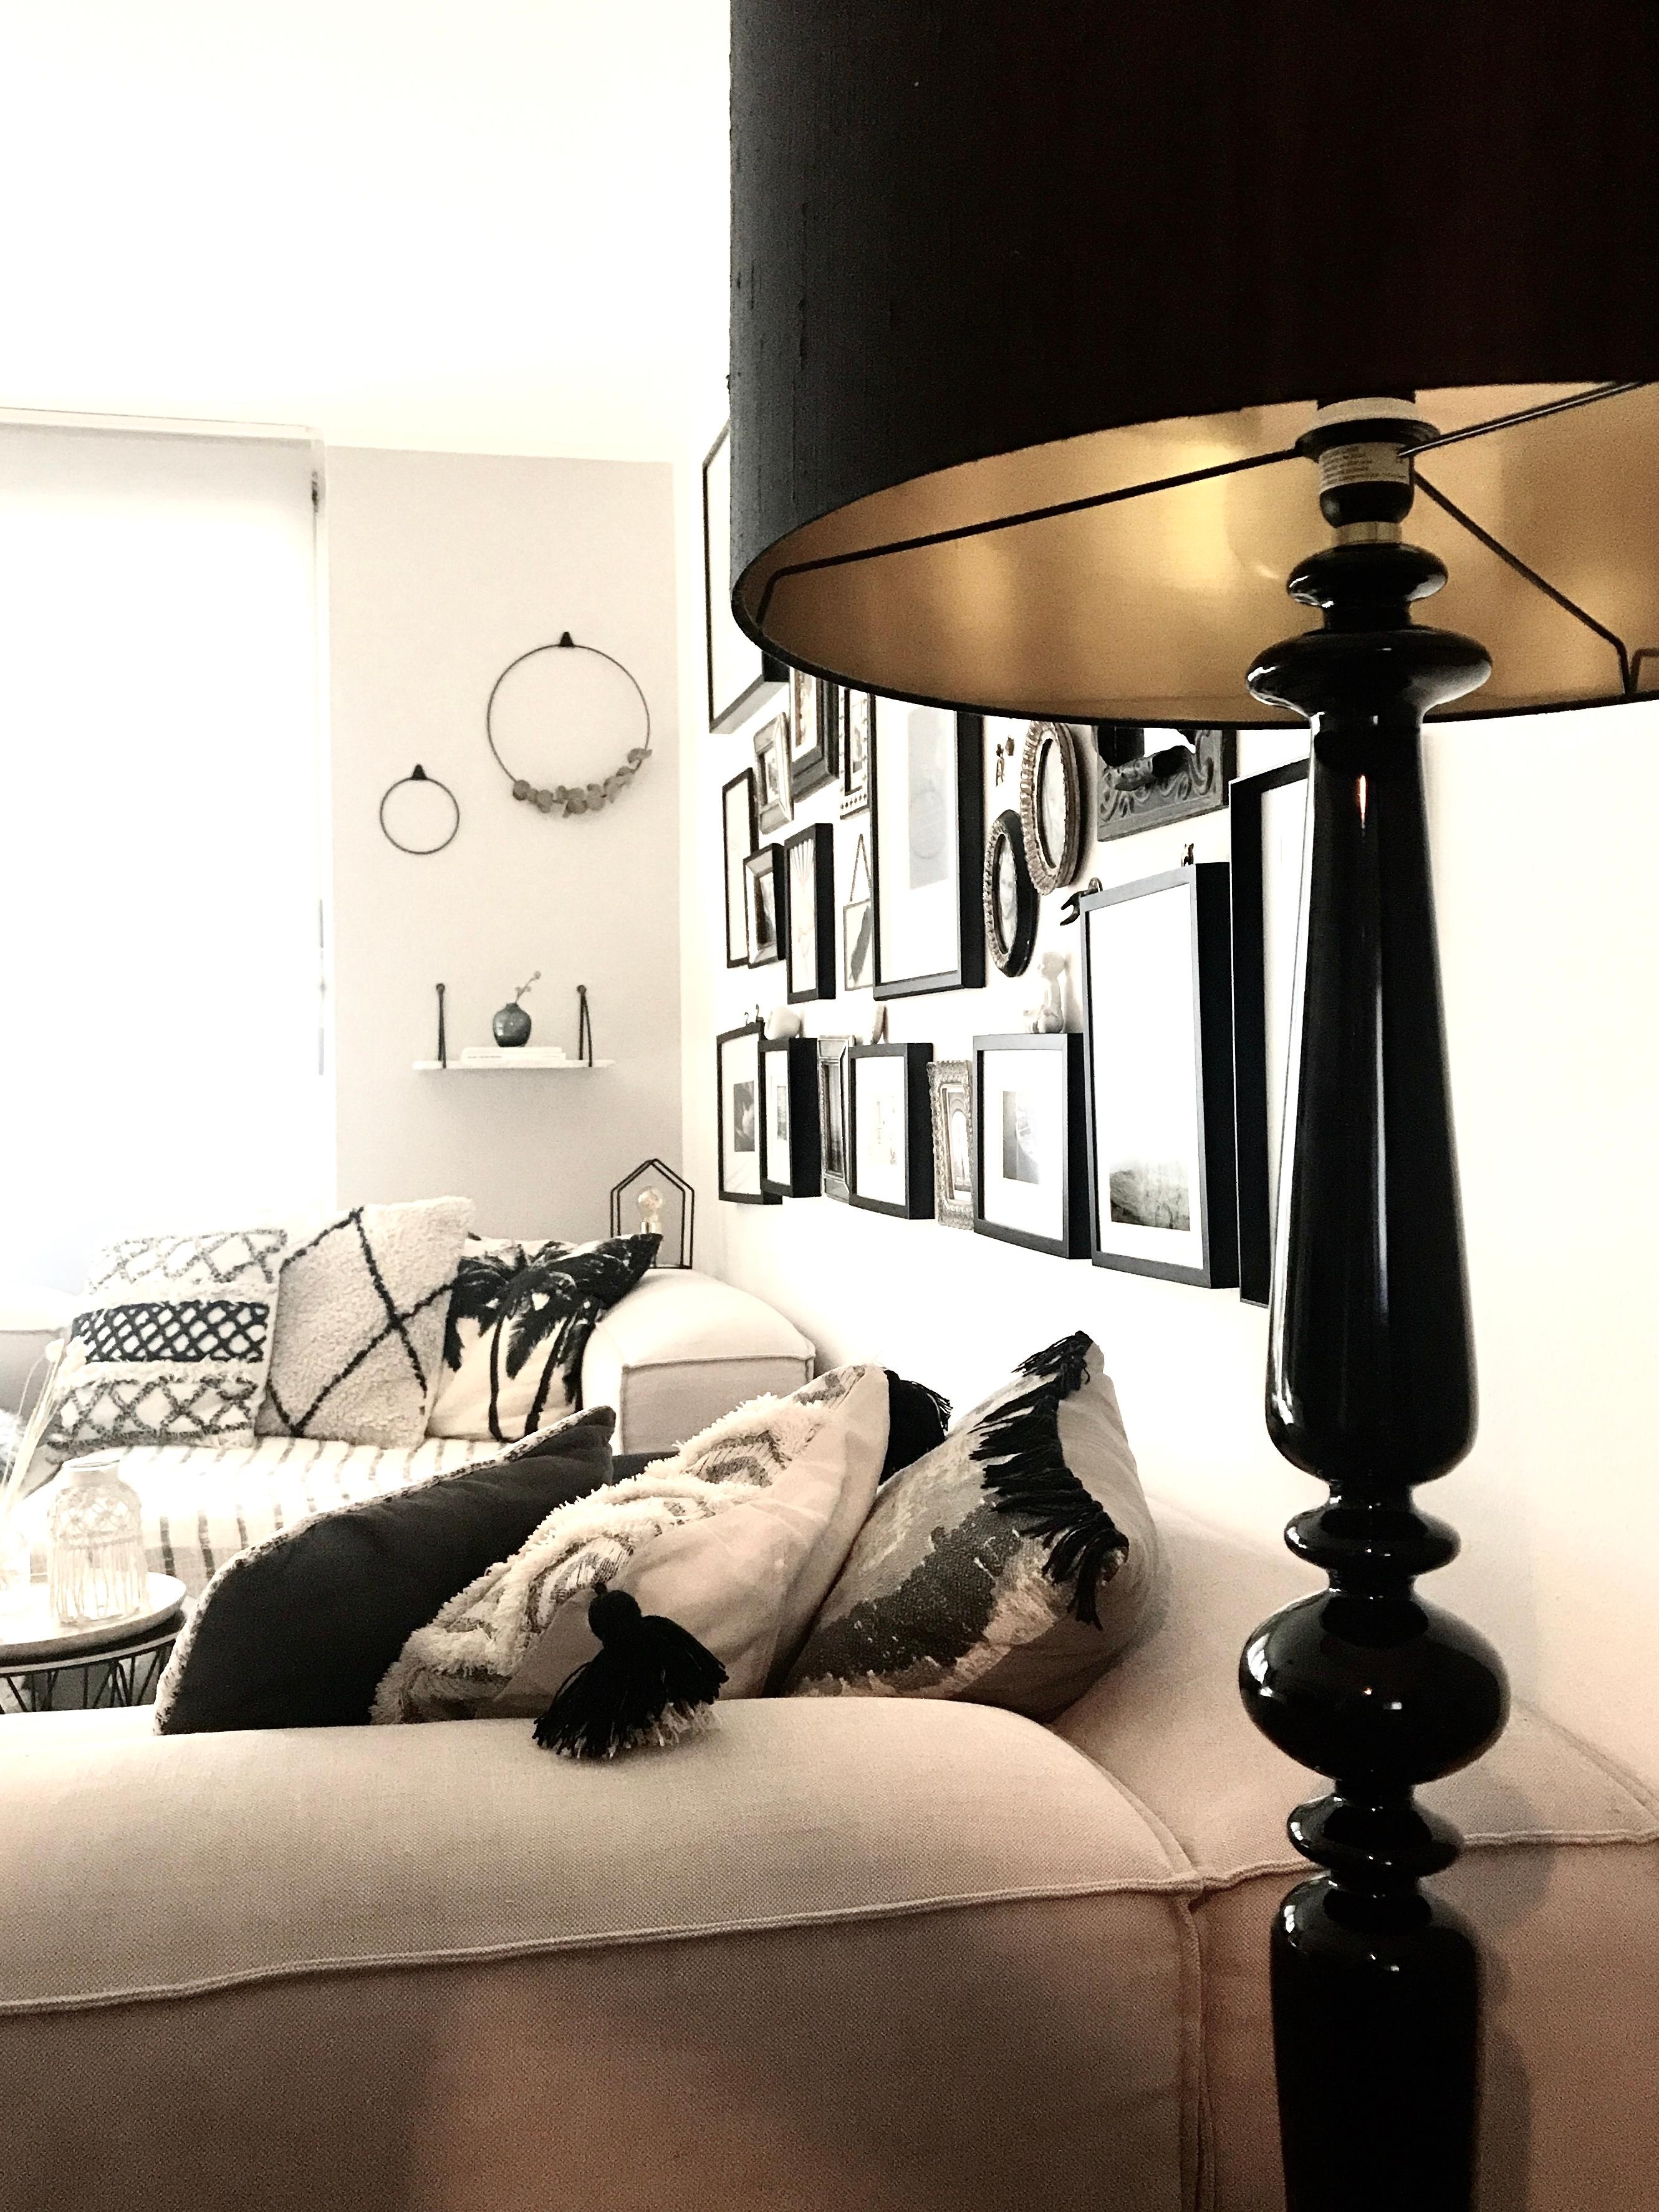 🗝lamp
#wohnzimmer #eohnzimmerideen #bilderwand #couch #lieblingsplatz 